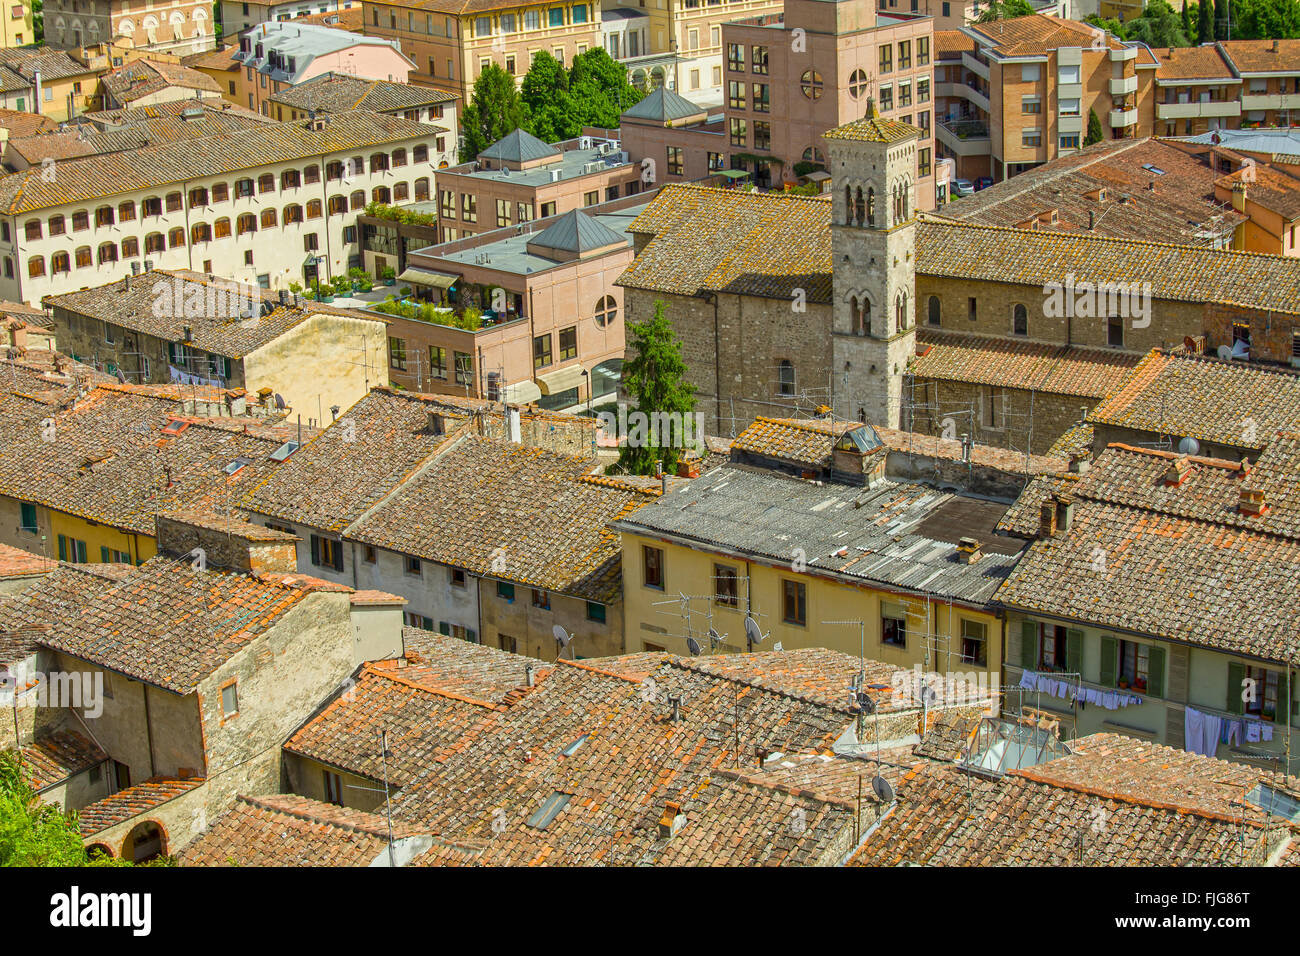 Vista en una ciudad italiana en la Toscana, con sus típicos tejados de terracota Foto de stock